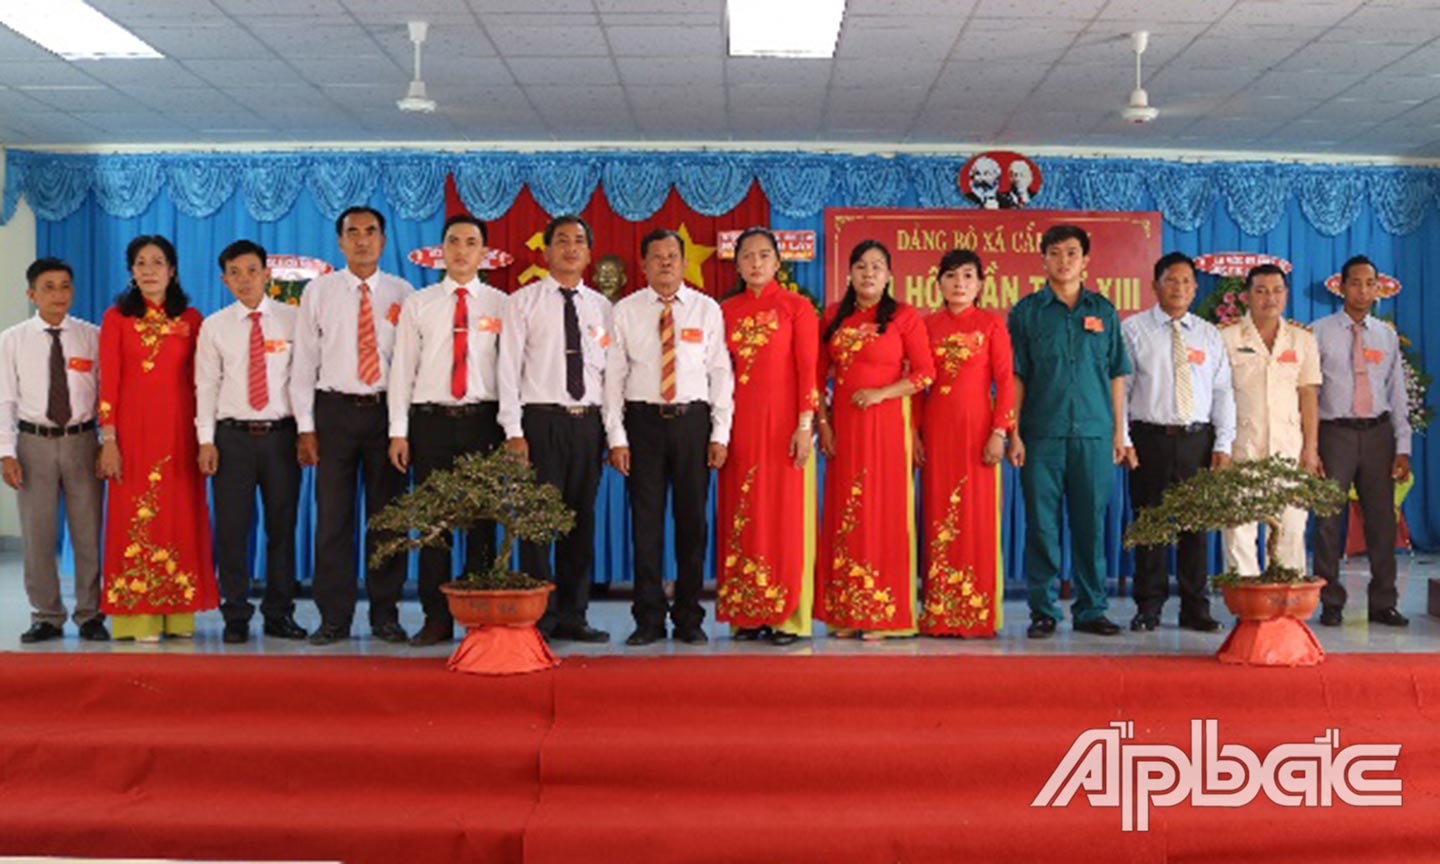 Ra mắt BCH Đảng bộ xã Cẩm Sơn nhiệm kỳ 2020 - 2025 tại Đại hội.